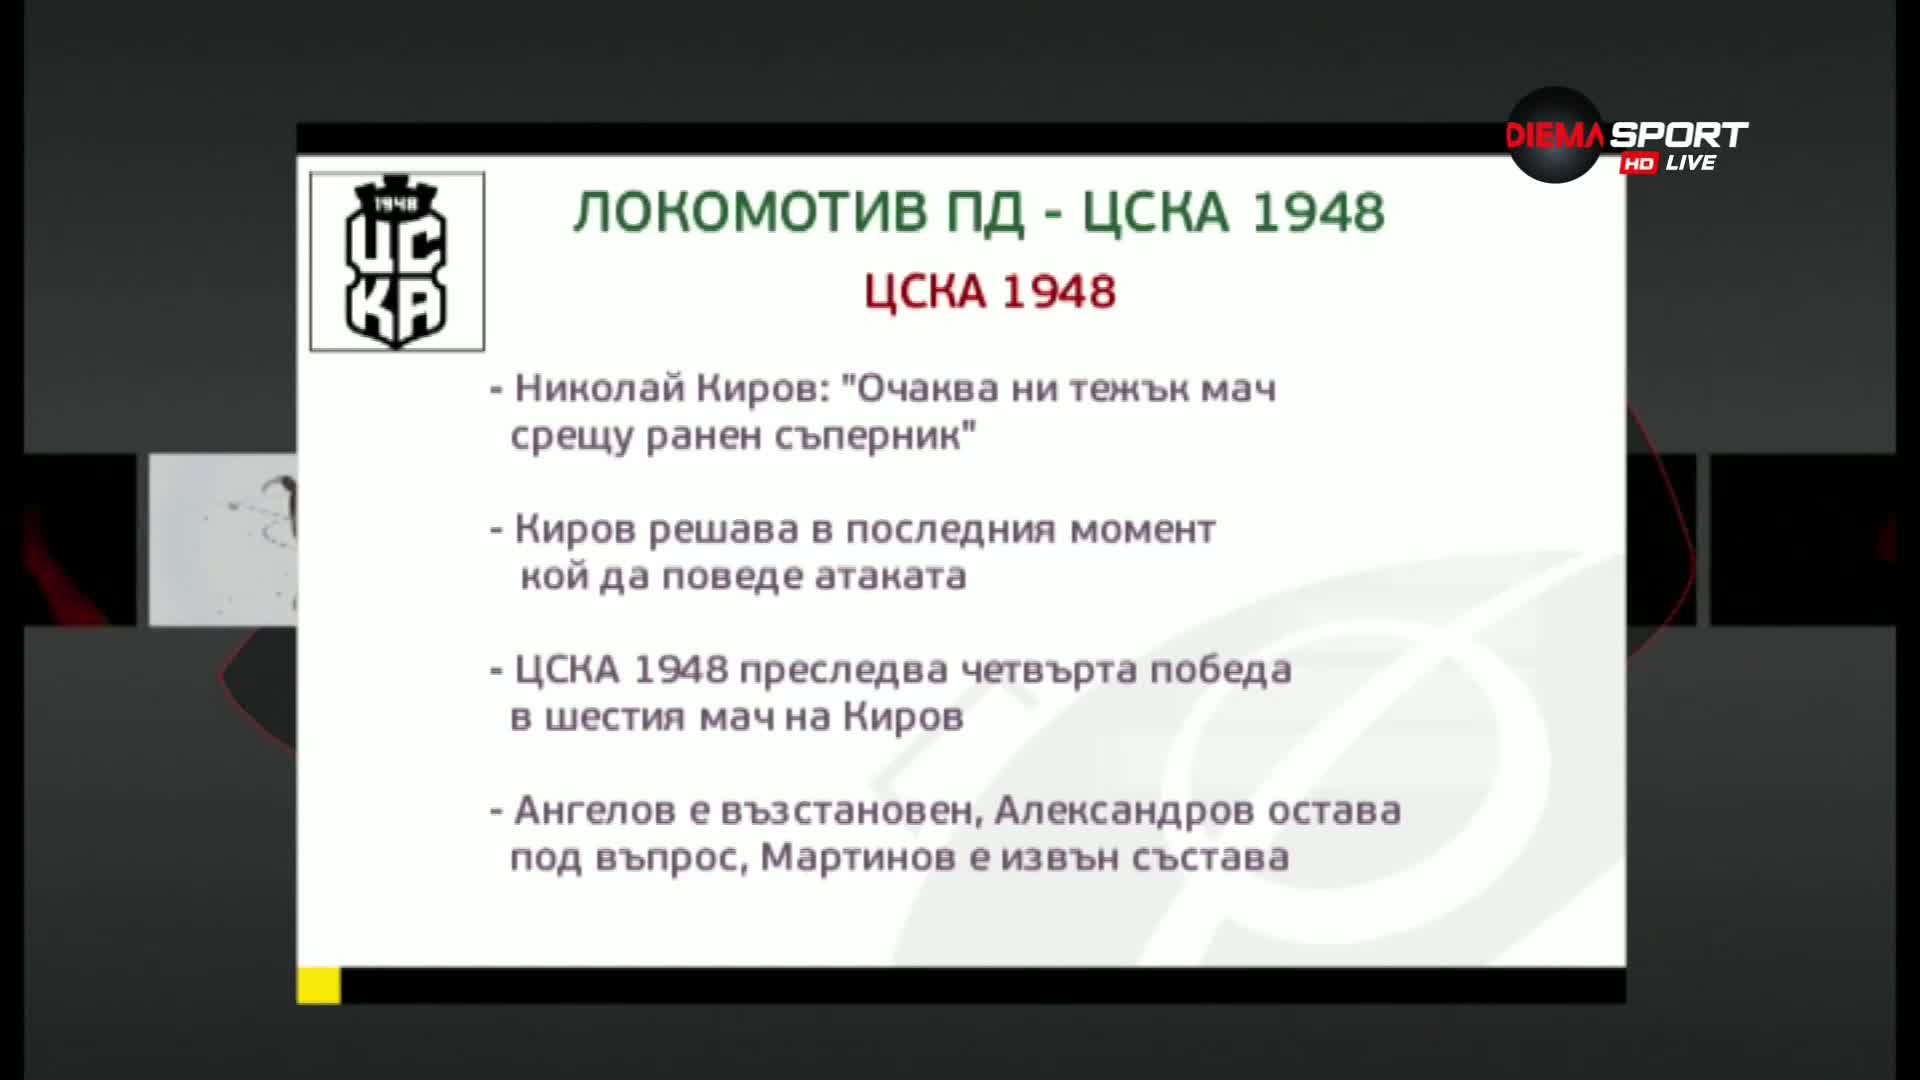 Преди Локо Пд - ЦСКА 1948